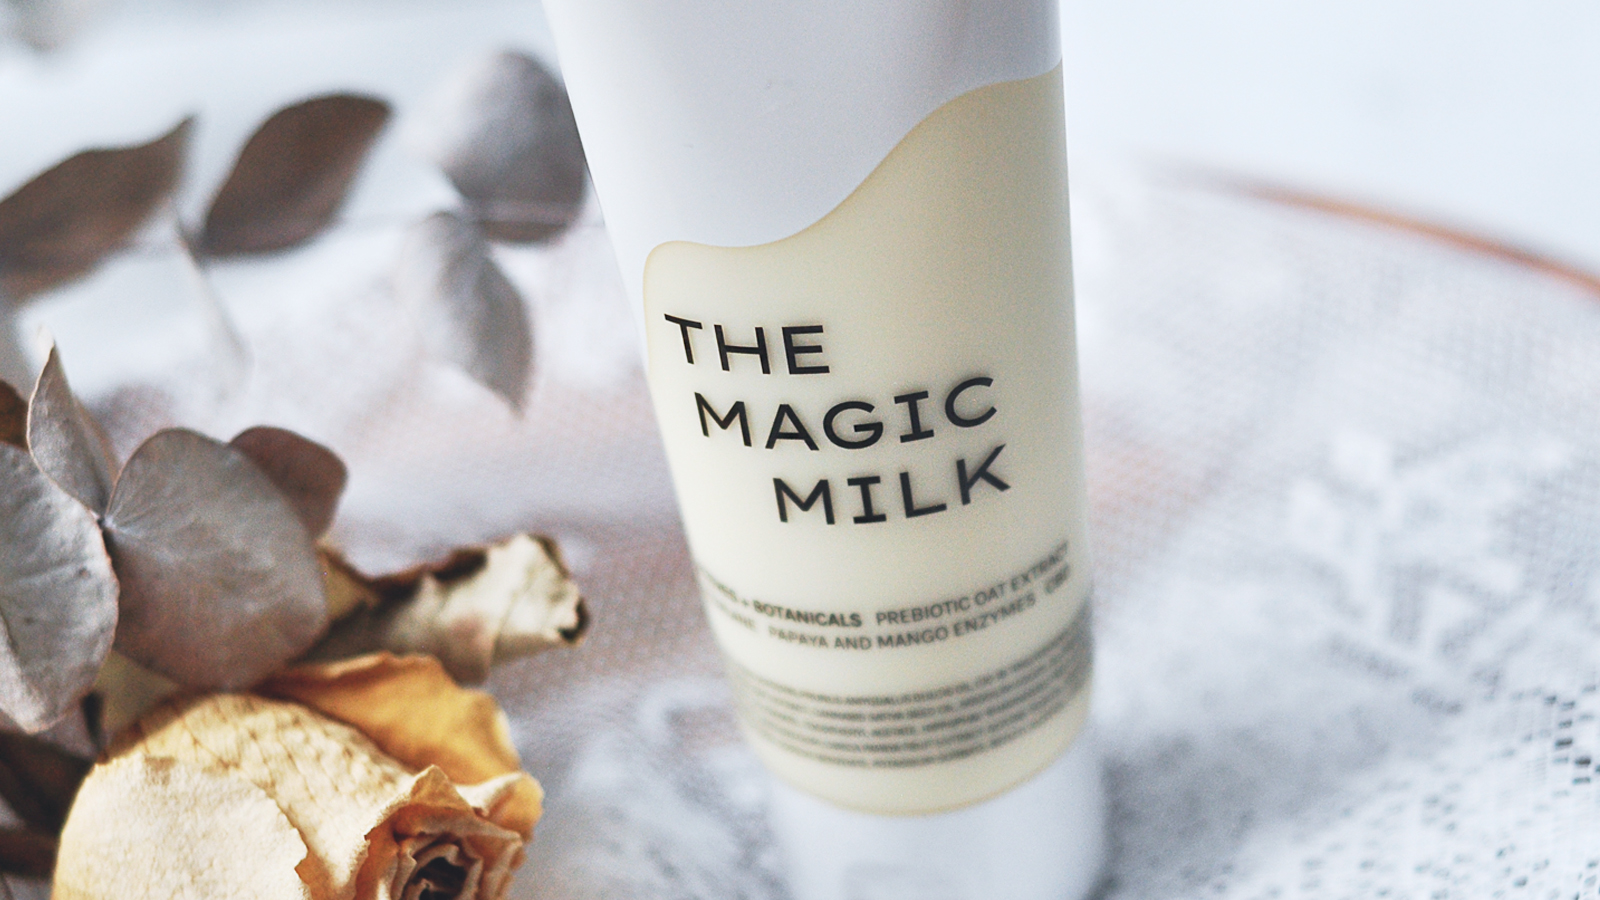 The Magic Milk